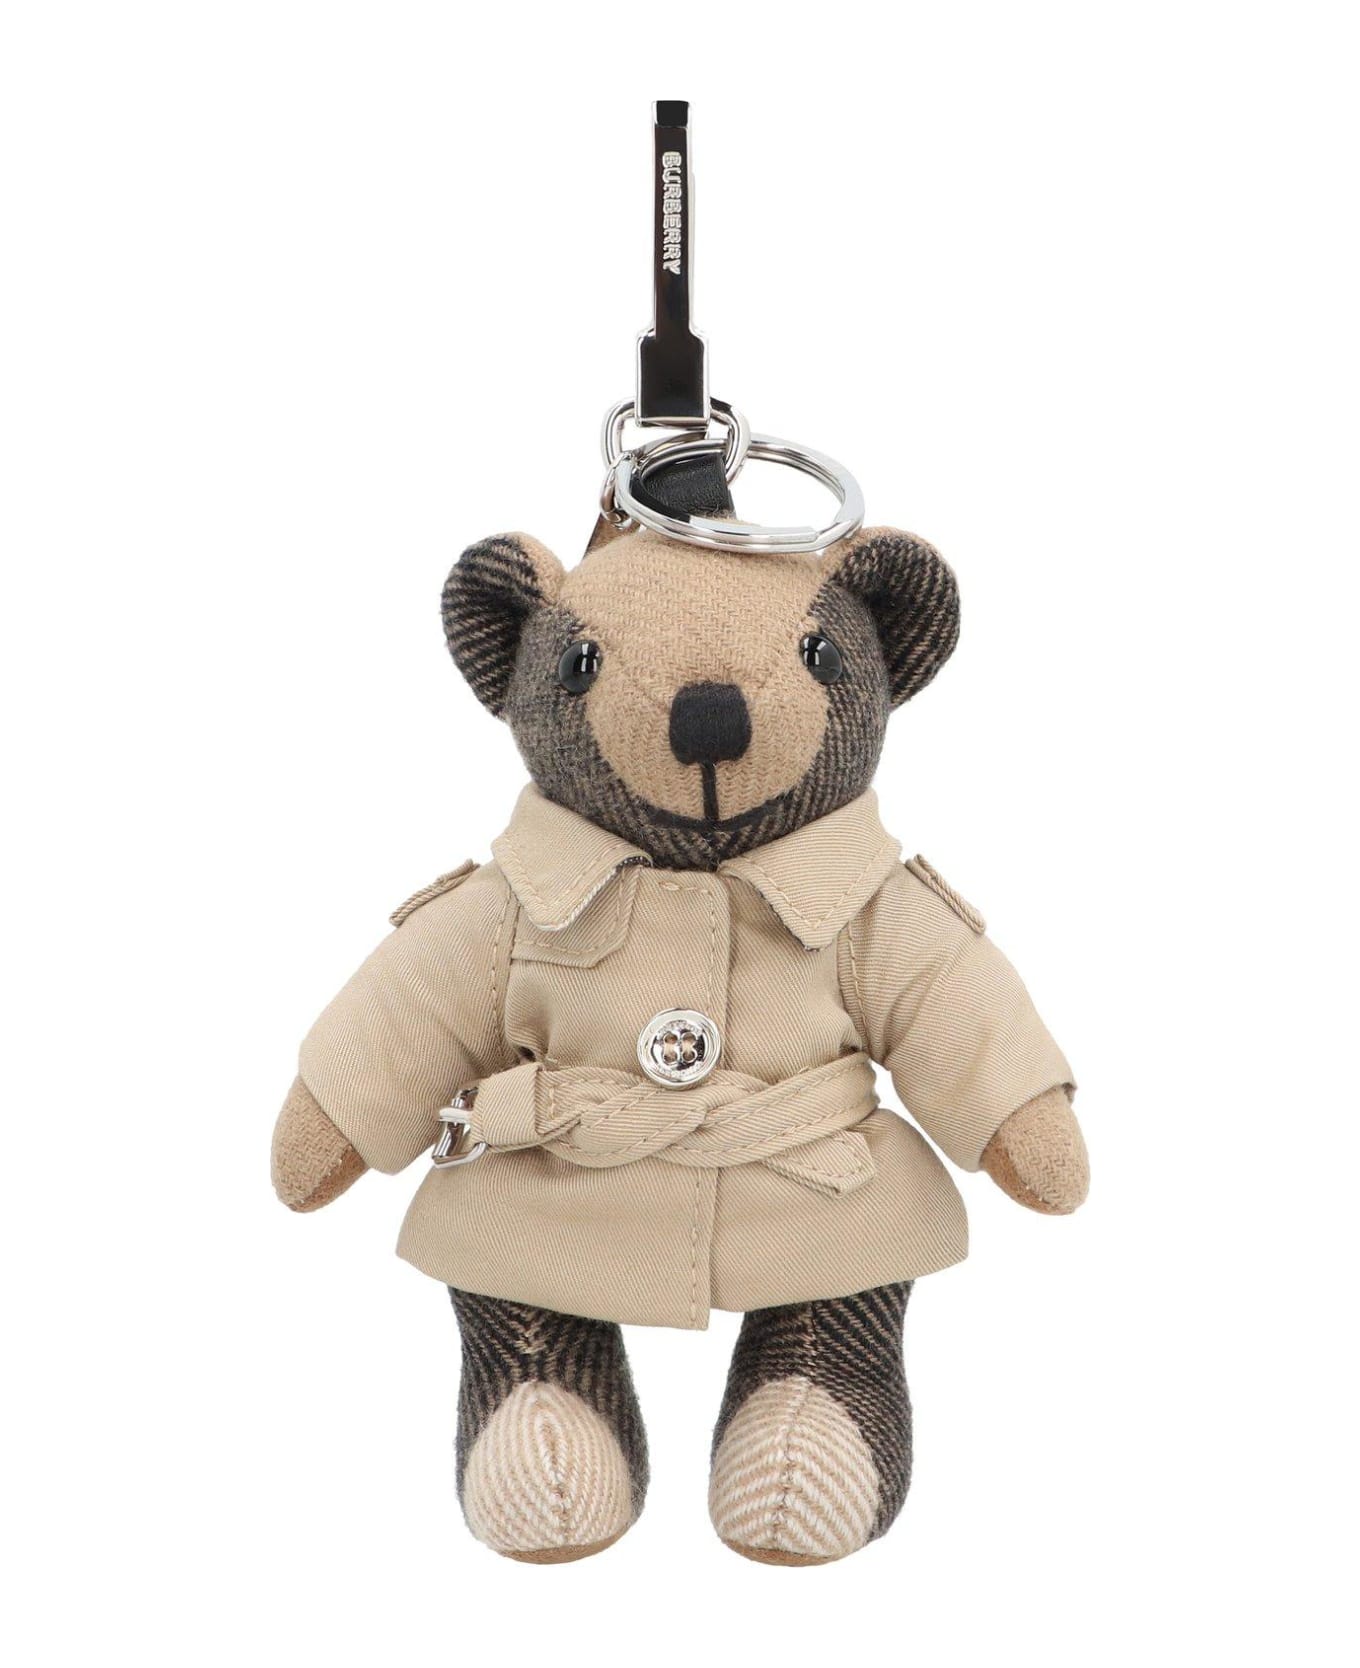 Burberry Bear Charm Keychain - A7026